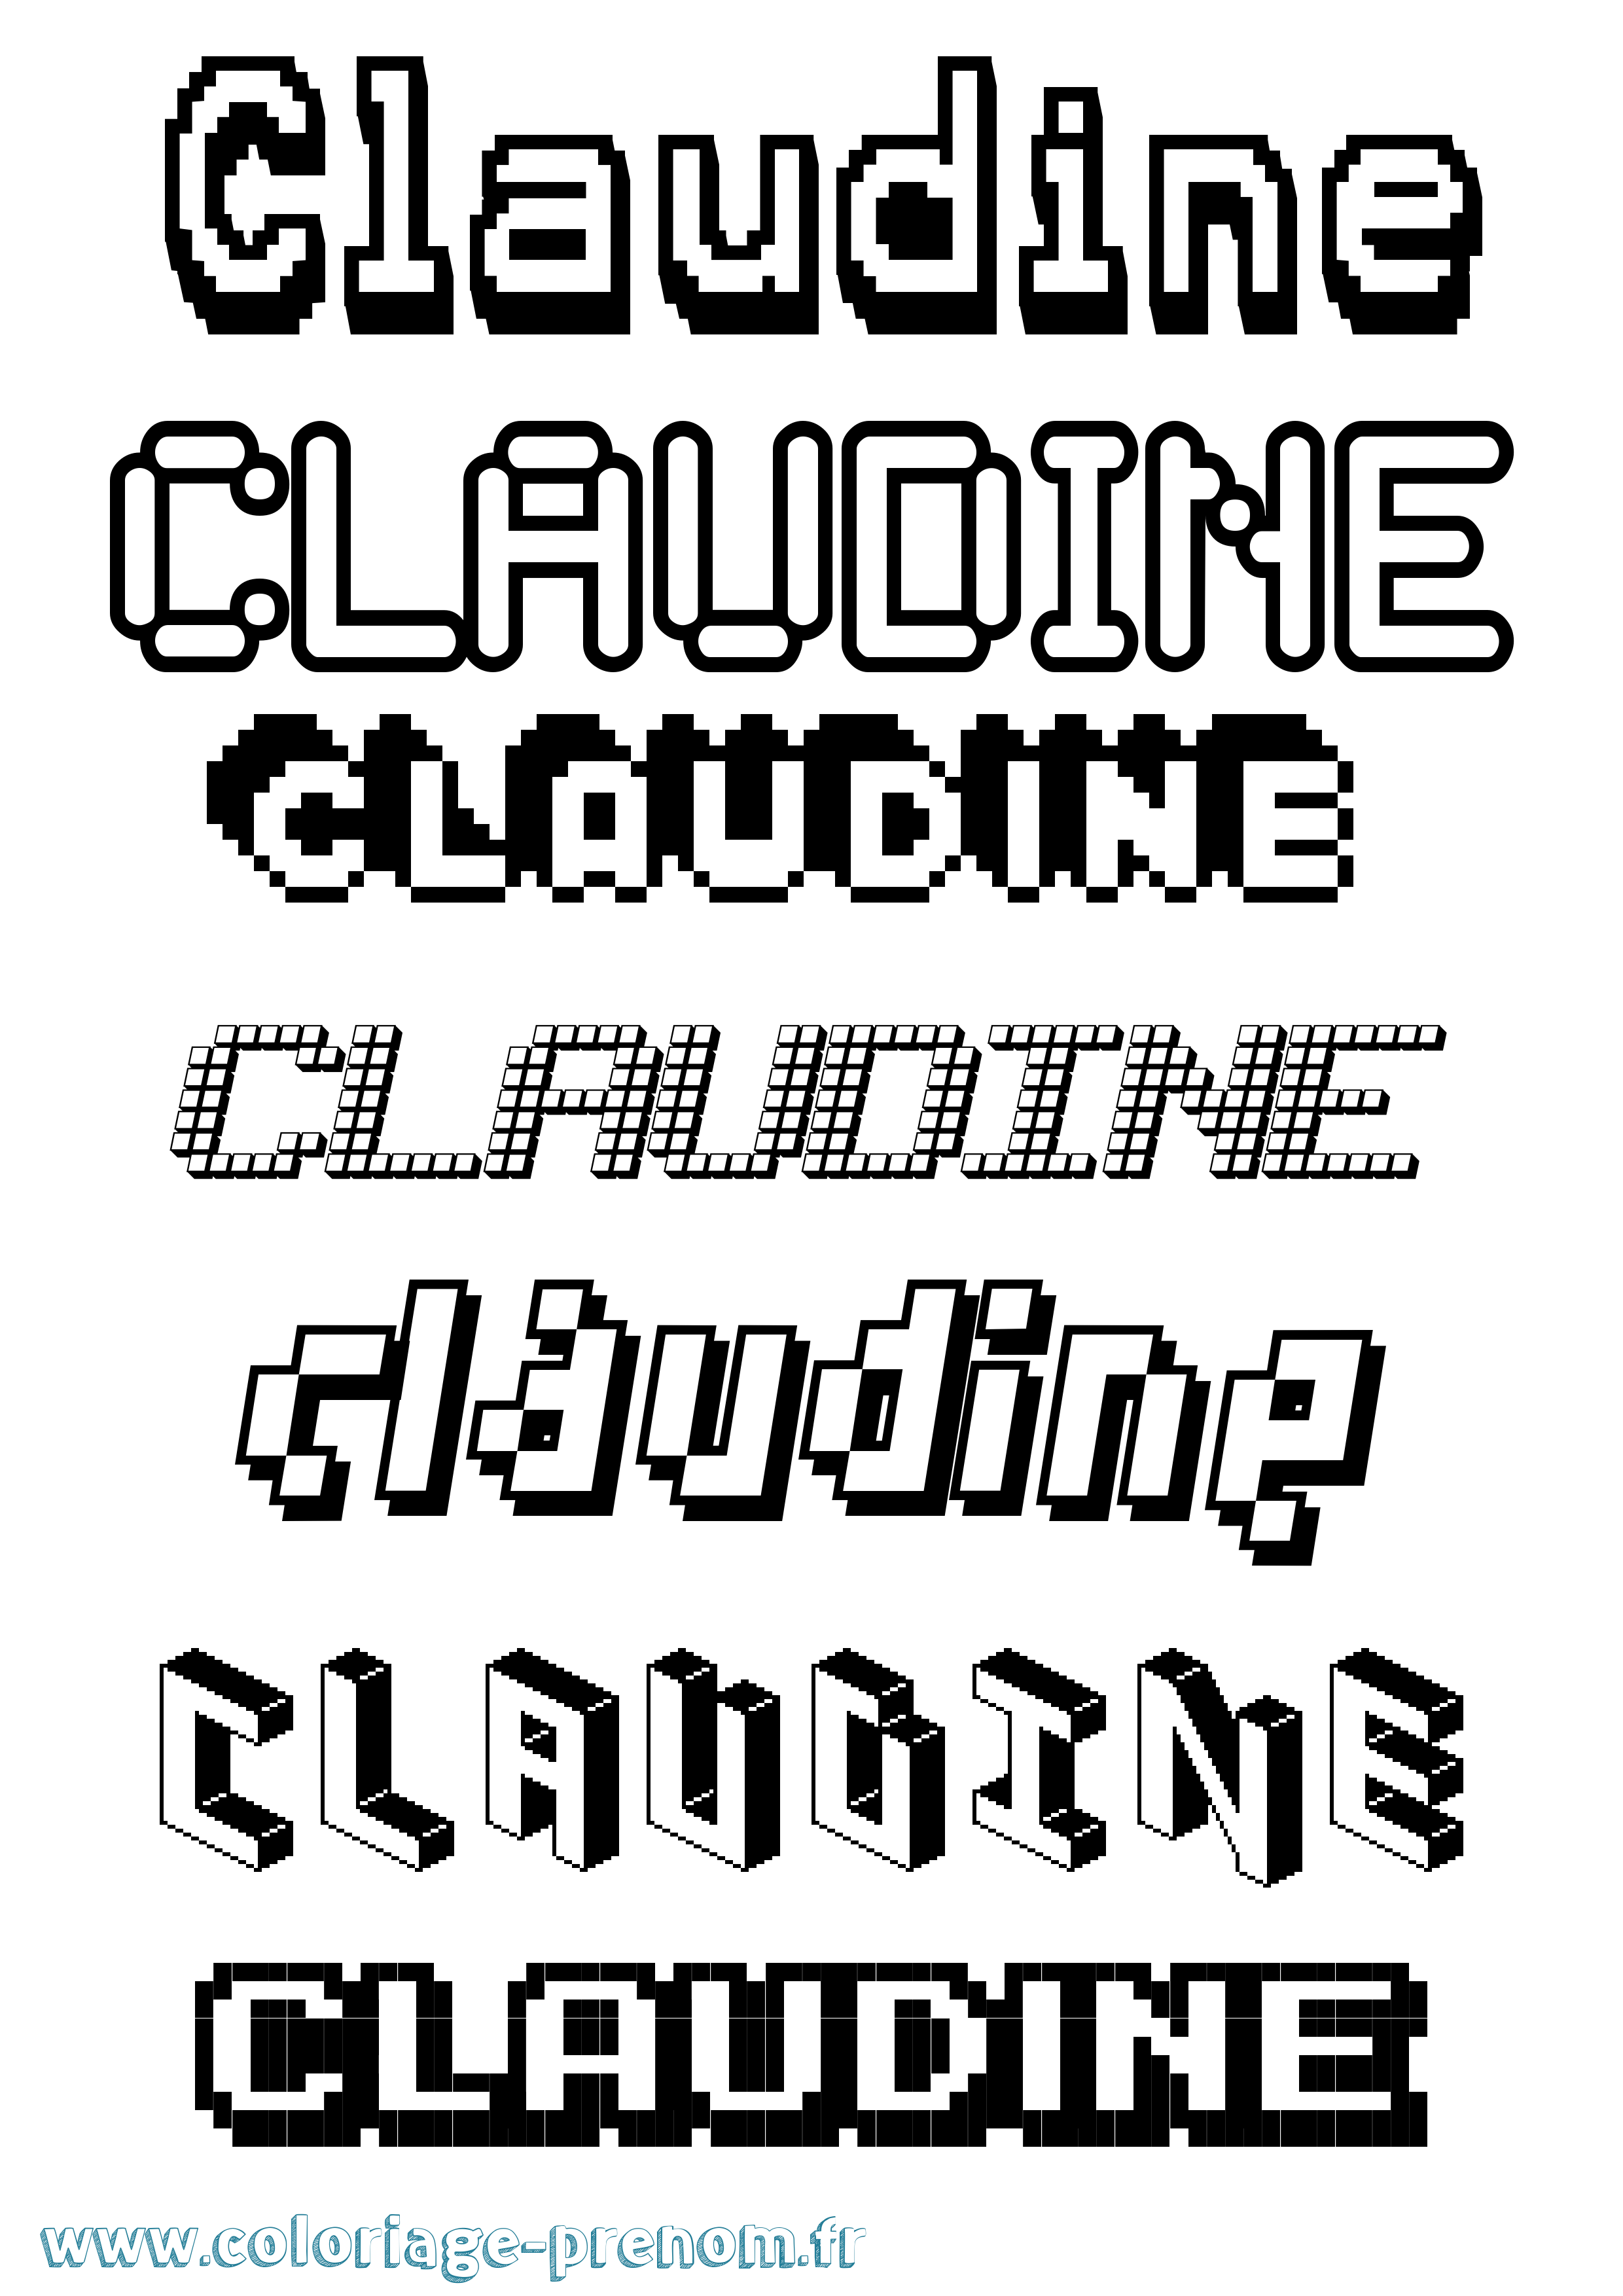 Coloriage prénom Claudine Pixel